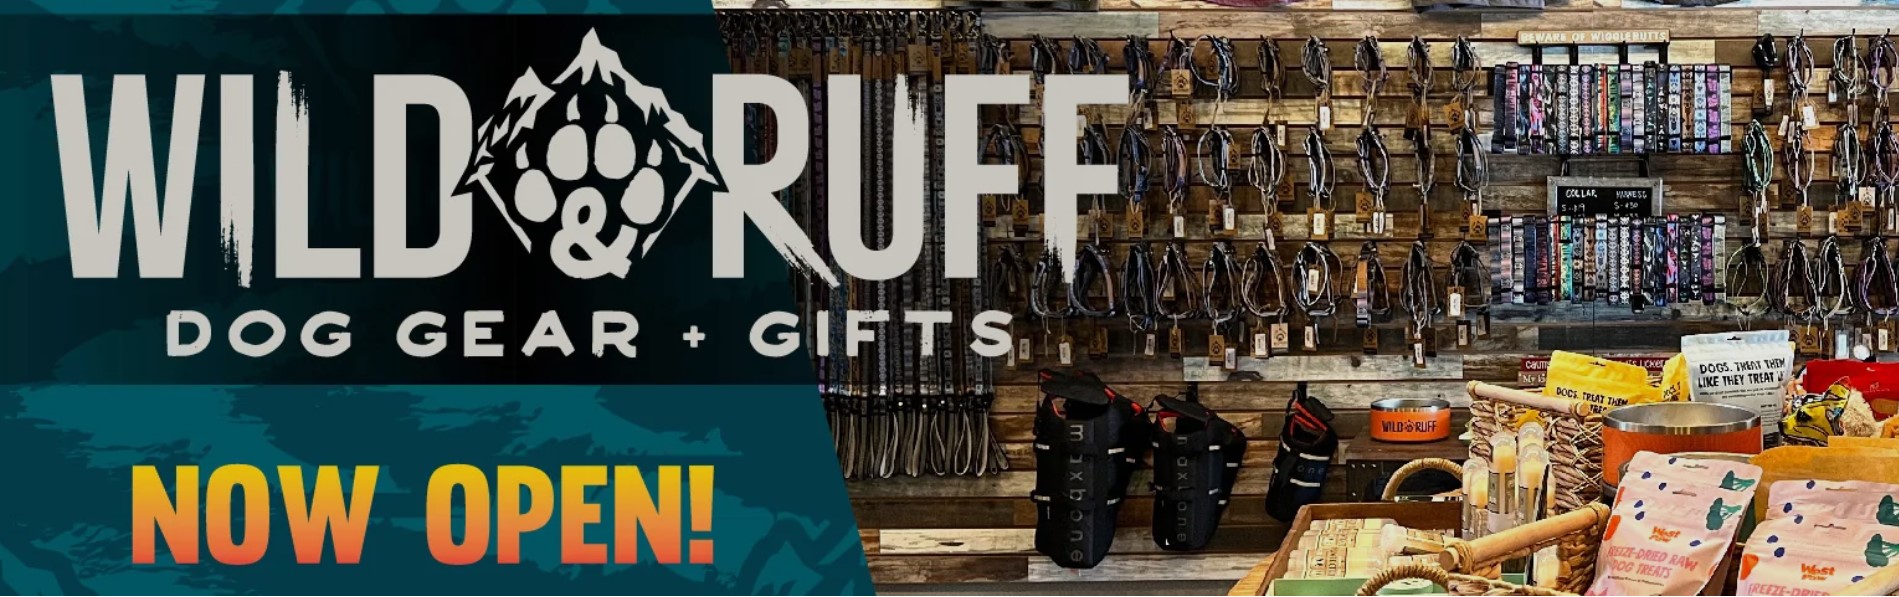 Meet New Member: Wild & Ruff Dog Gear + Gifts